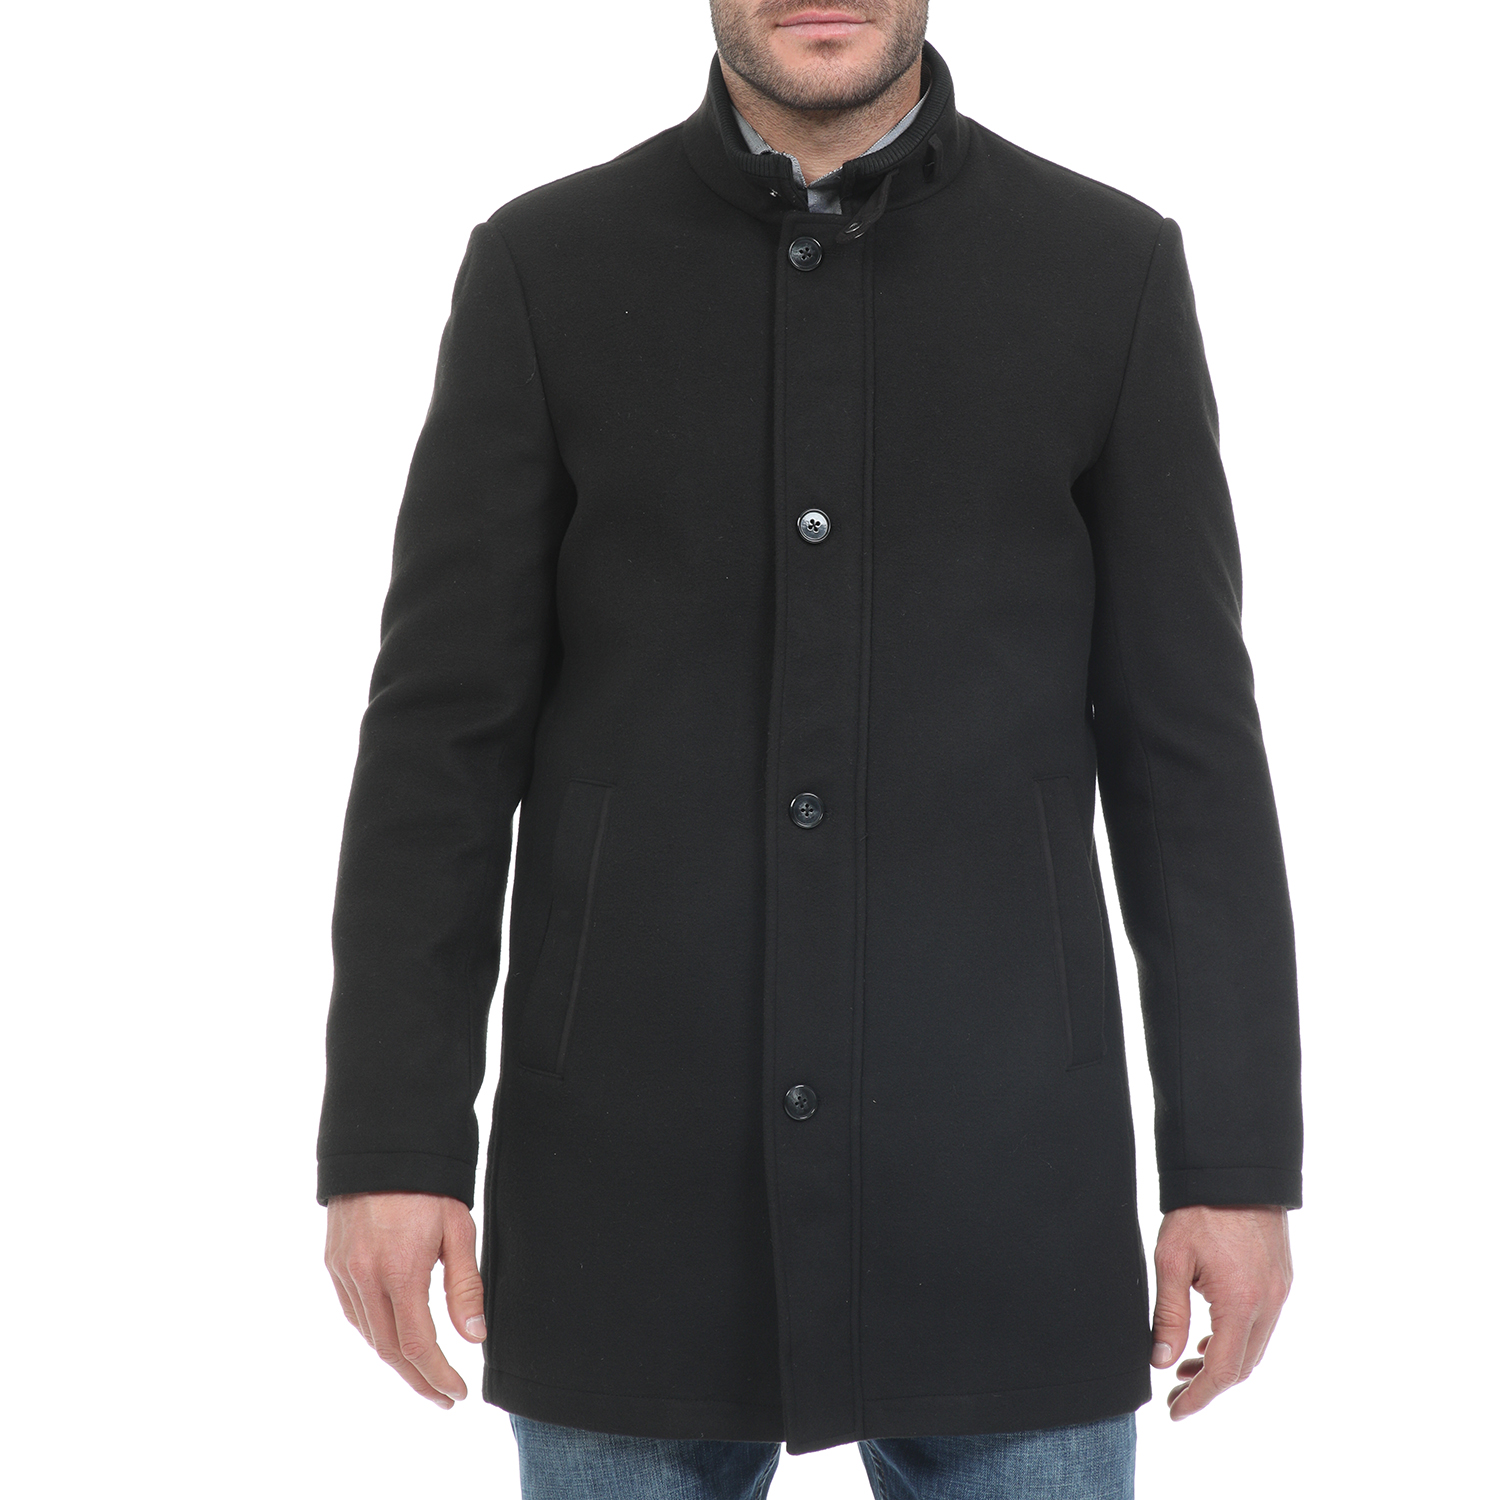 Ανδρικά/Ρούχα/Πανωφόρια/Παλτό BATTERY - Ανδρικό παλτό BATTERY μαύρο